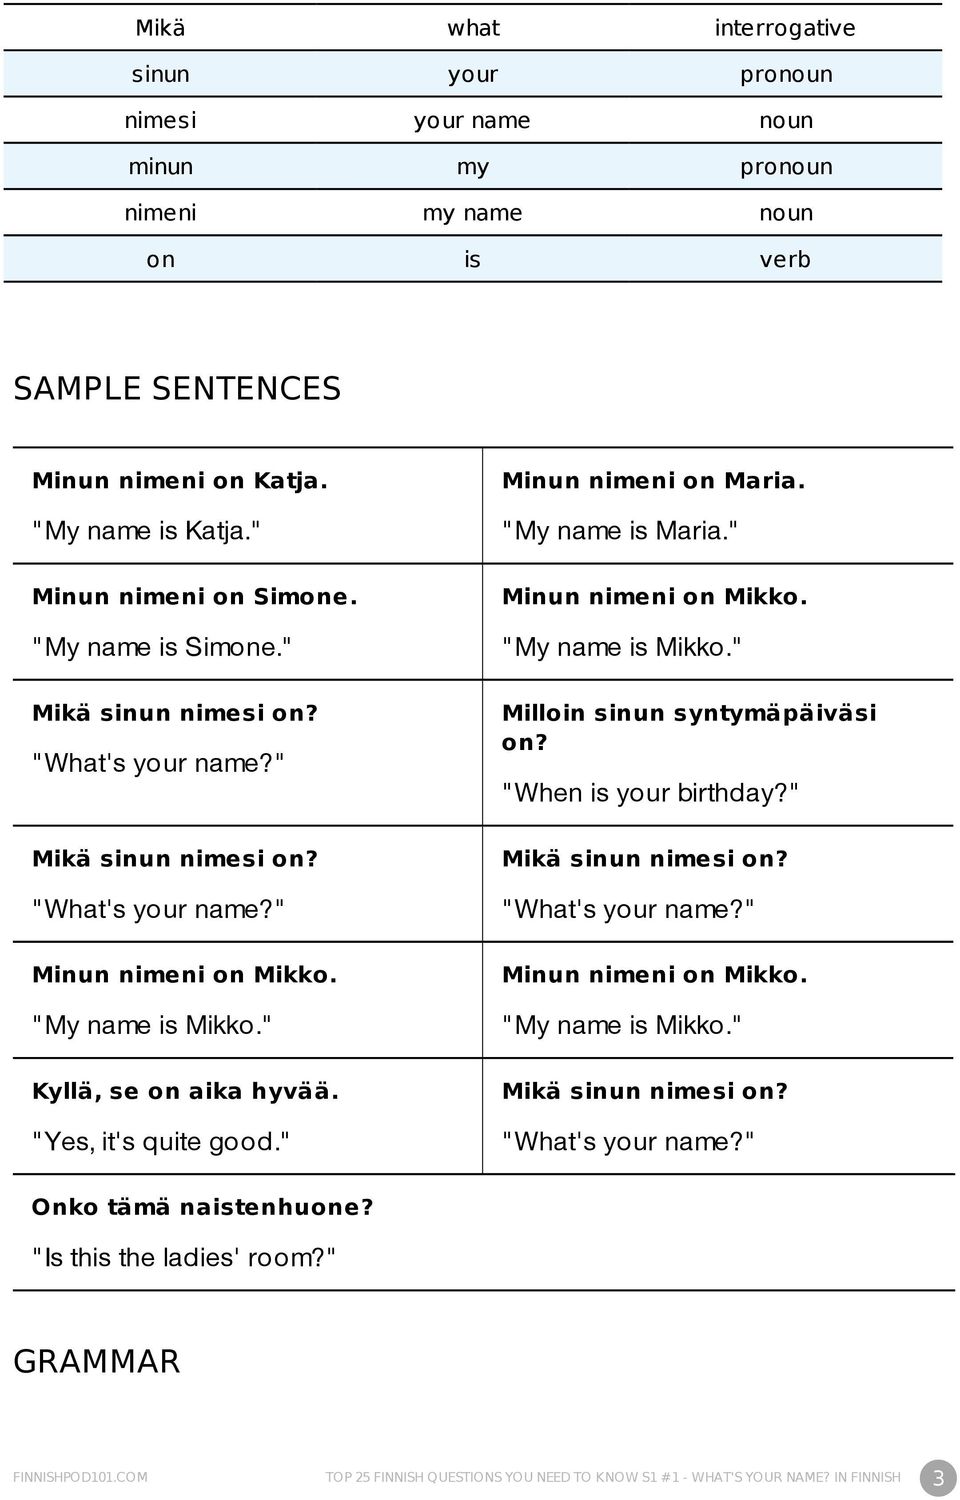 " Minun nimeni on Maria. "My name is Maria." Minun nimeni on Mikko. "My name is Mikko." Milloin sinun syntymäpäiväsi on? "When is your birthday?" Mikä sinun nimesi on? "What's your name?